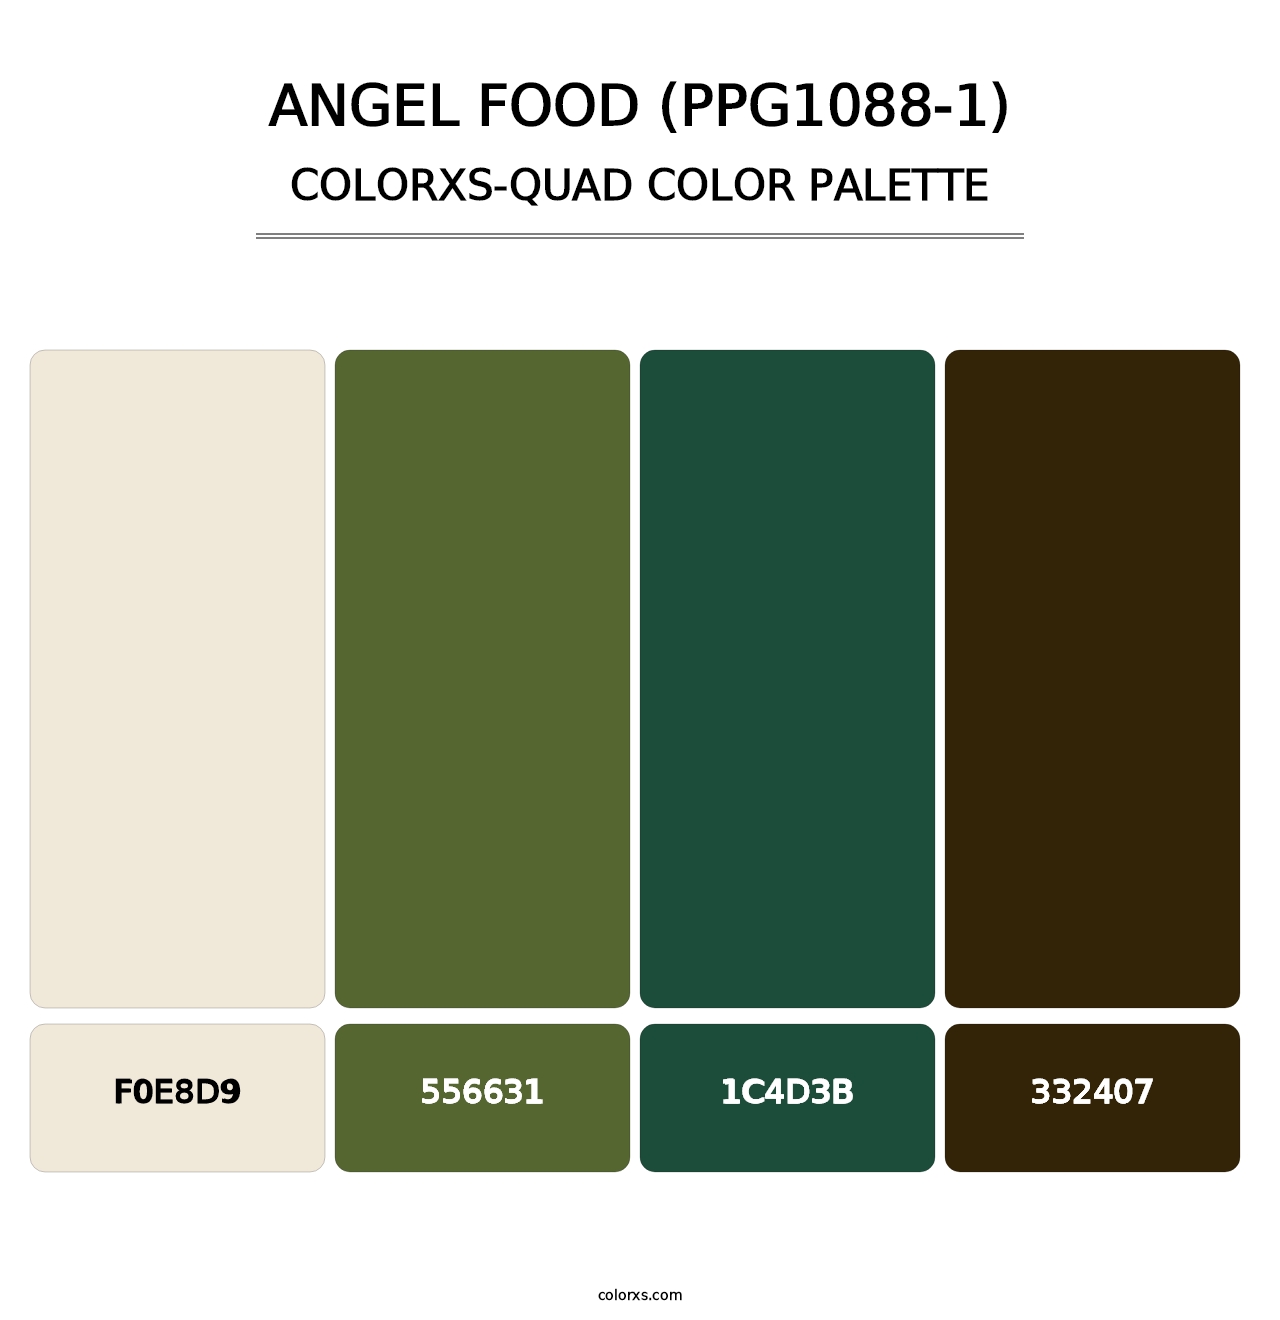 Angel Food (PPG1088-1) - Colorxs Quad Palette